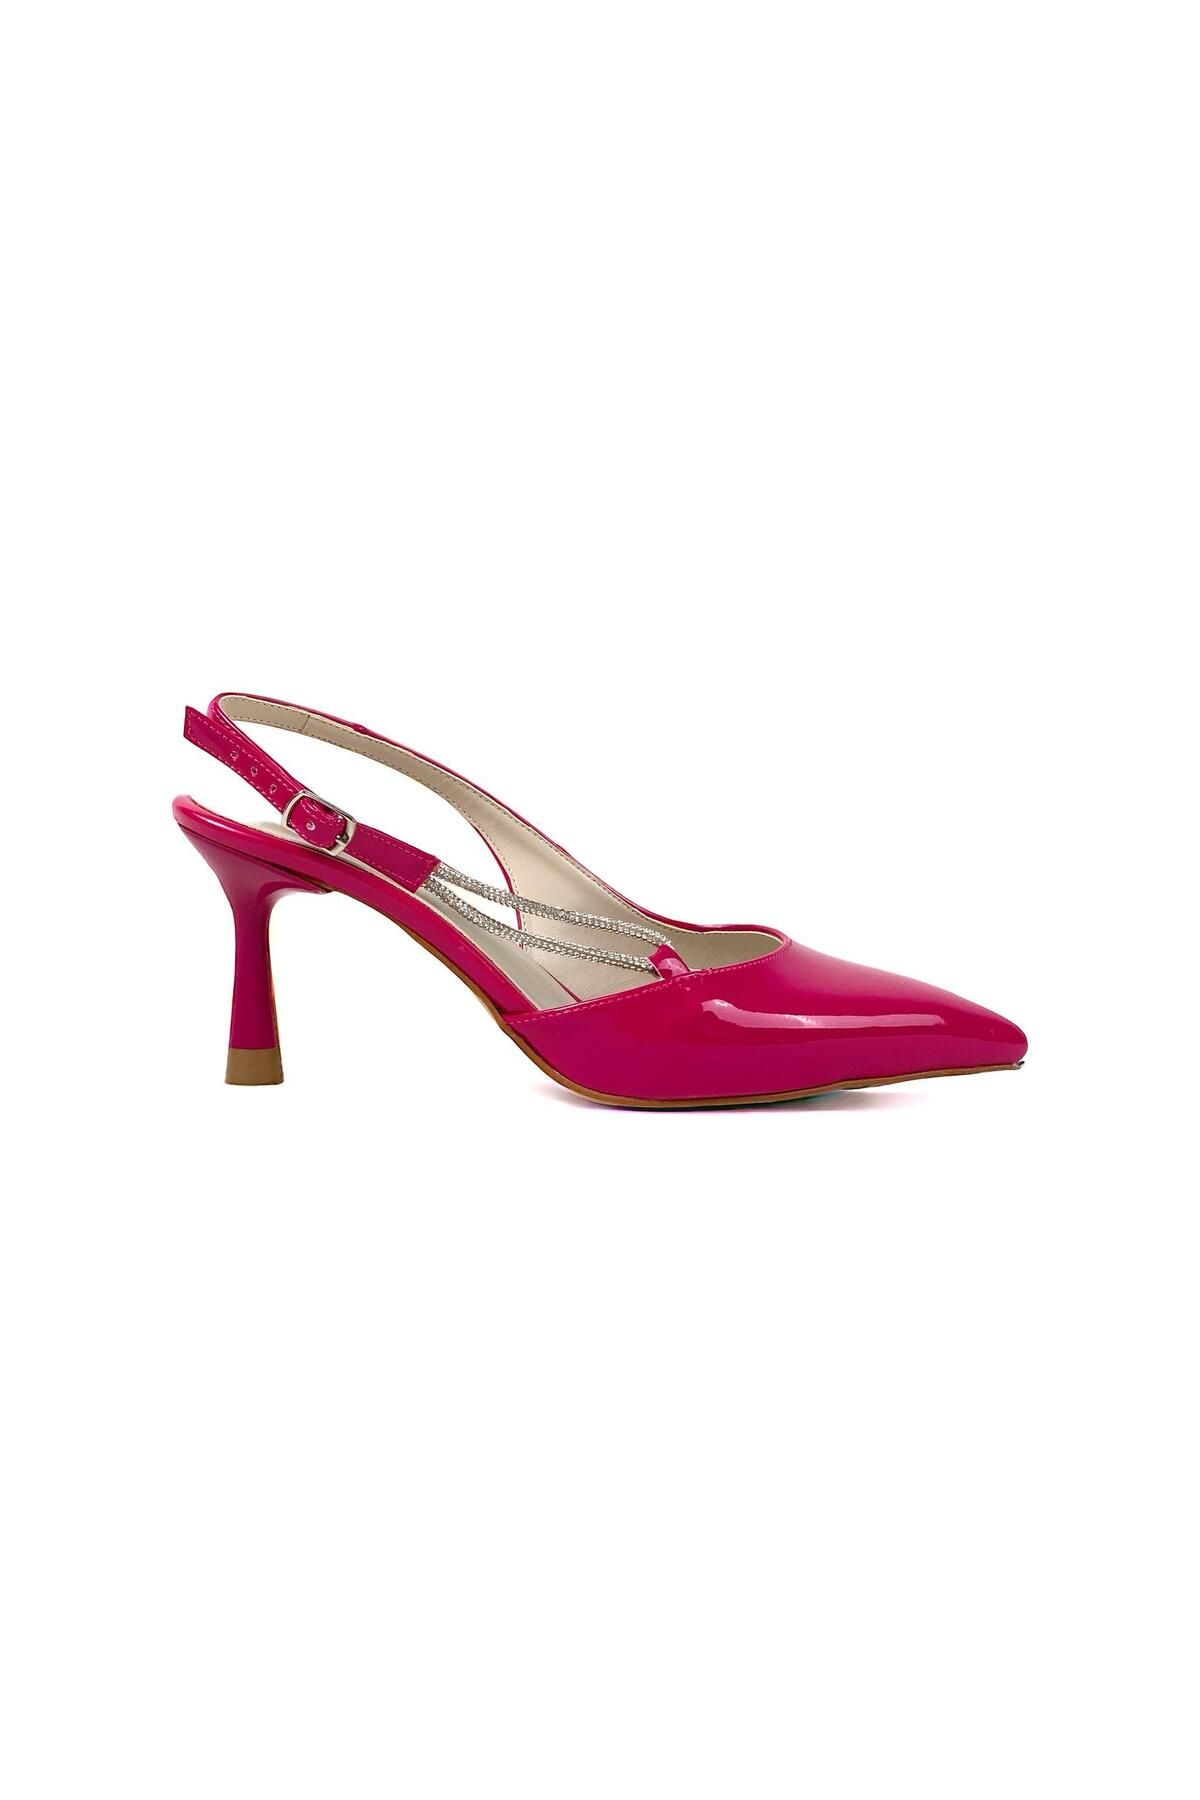 bescobel Kadın Uklan Fuşya Rugan Taş Detaylı Ayakkabı Sandalet 7 cm 705